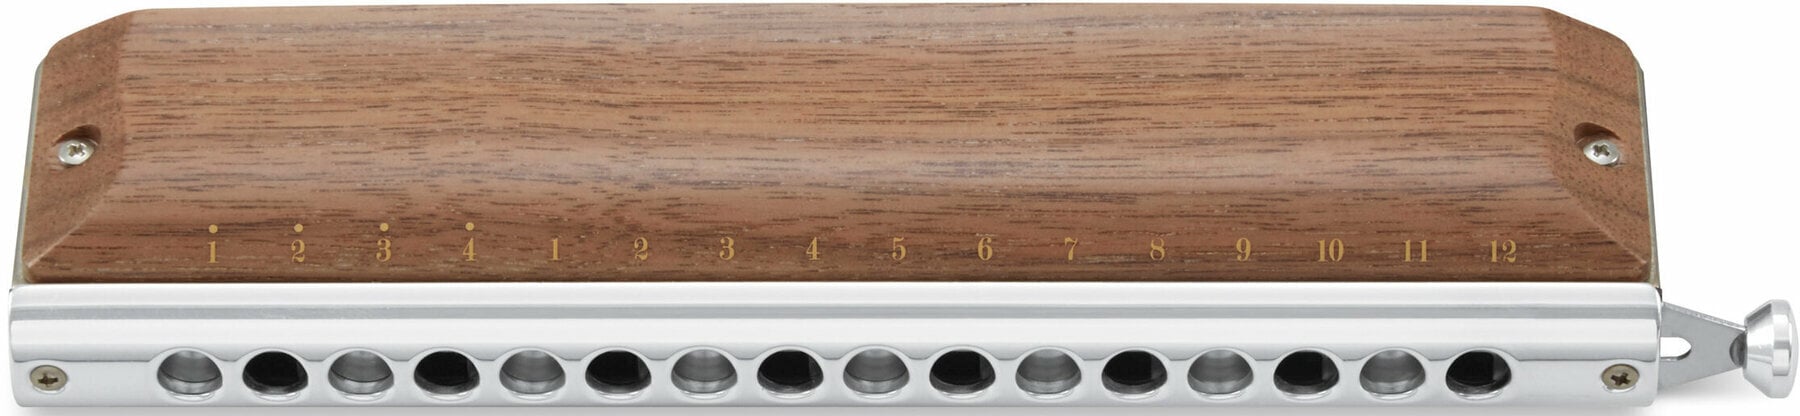 Chromatic harmonica Suzuki Music S-64CW Chromatic harmonica